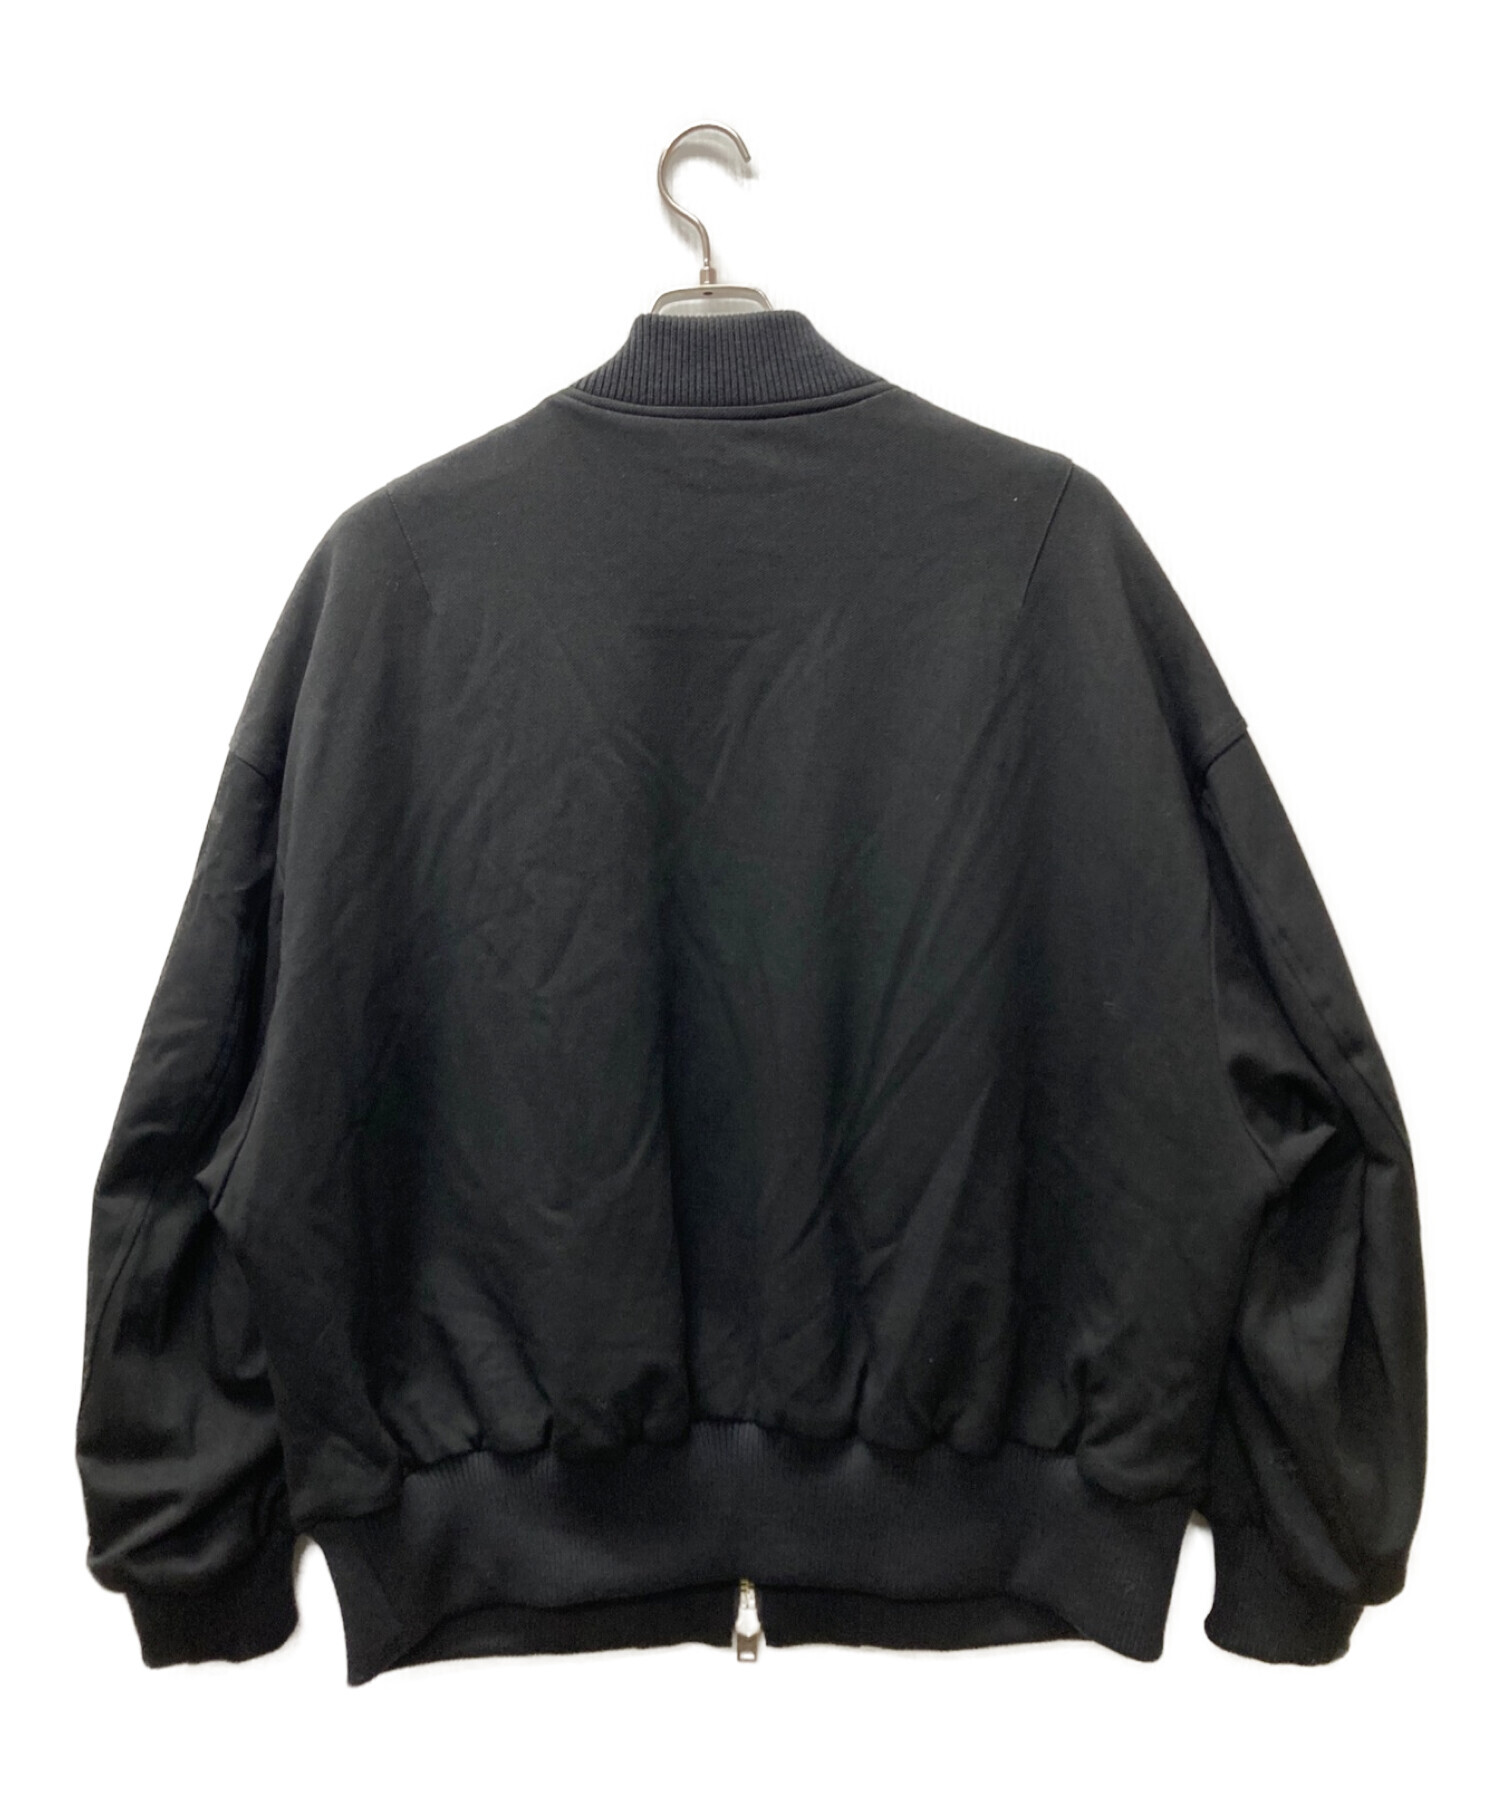 ROBES&CONFECTIONS (ローブスコンフェクションズ) MA-1ジャケット ブラック サイズ:3